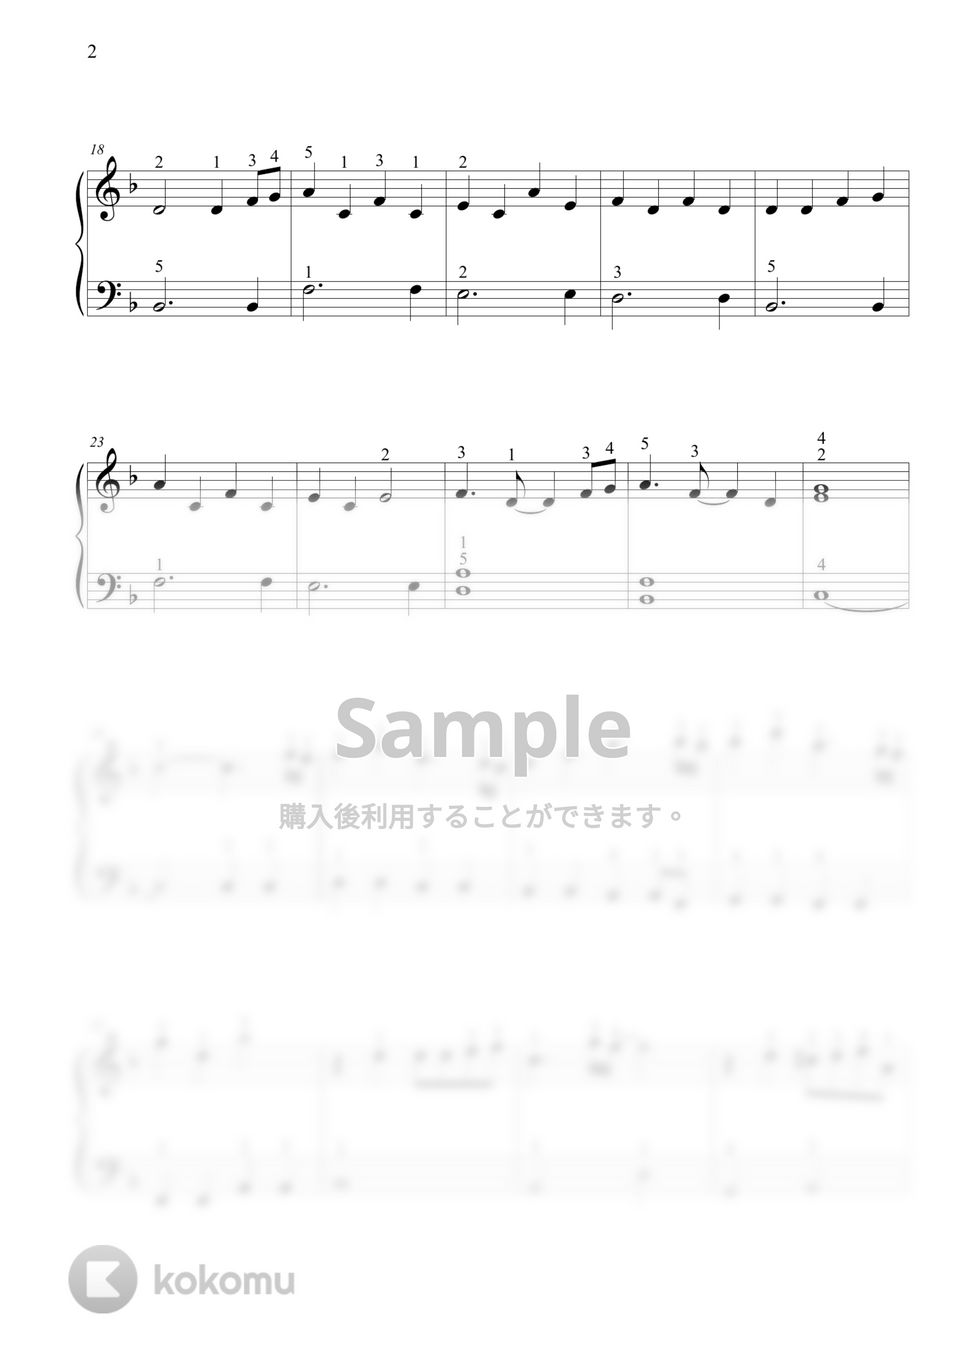 鬼滅の刃 - 竈門炭治郎のうた by THIS IS PIANO